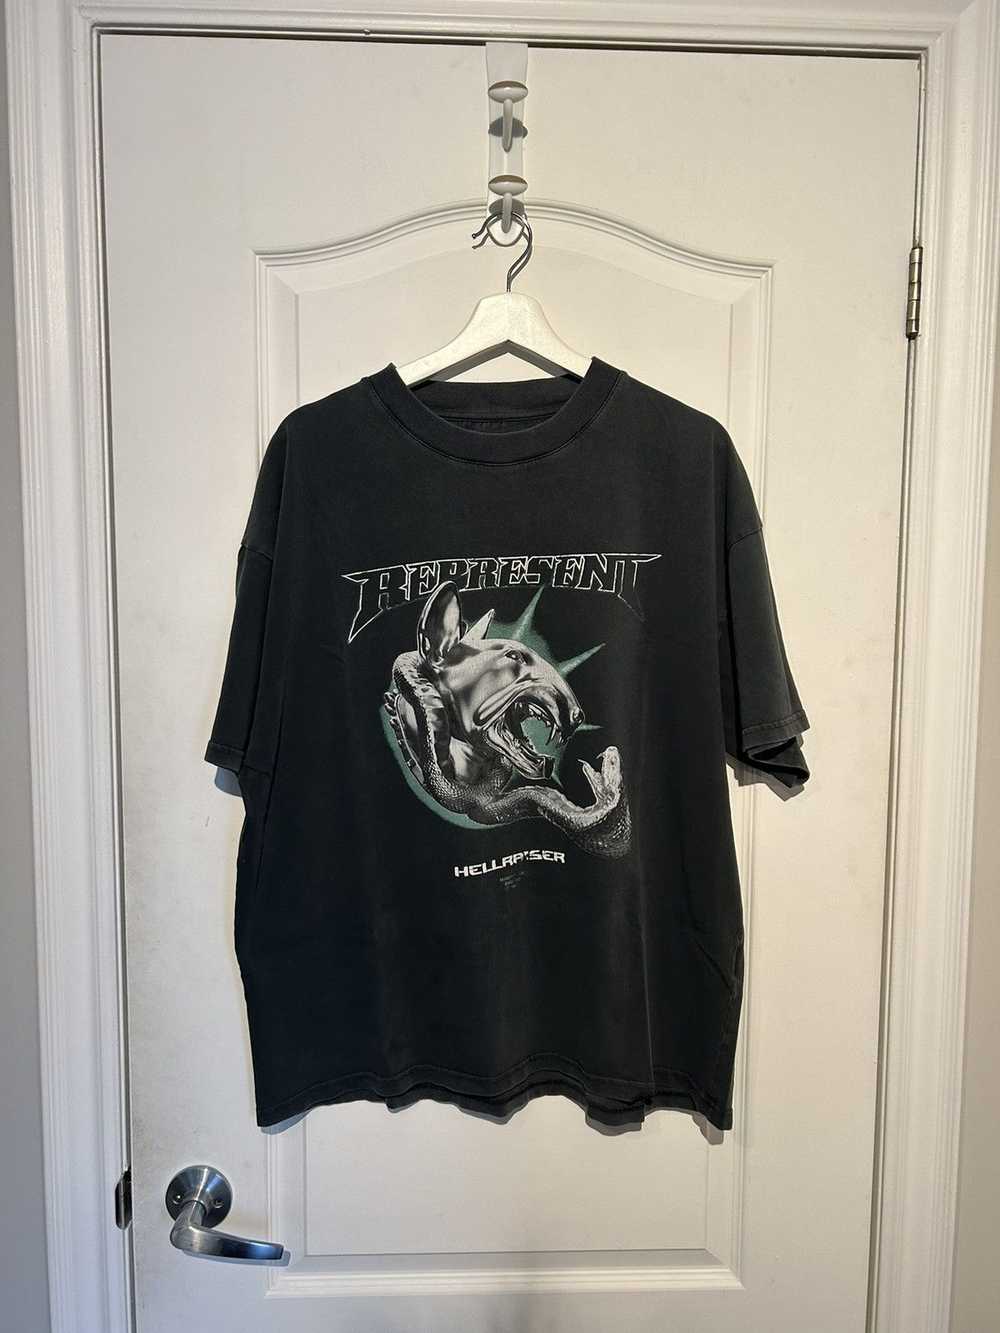 Represent Clo. Hellraiser T-Shirt, XL - image 1